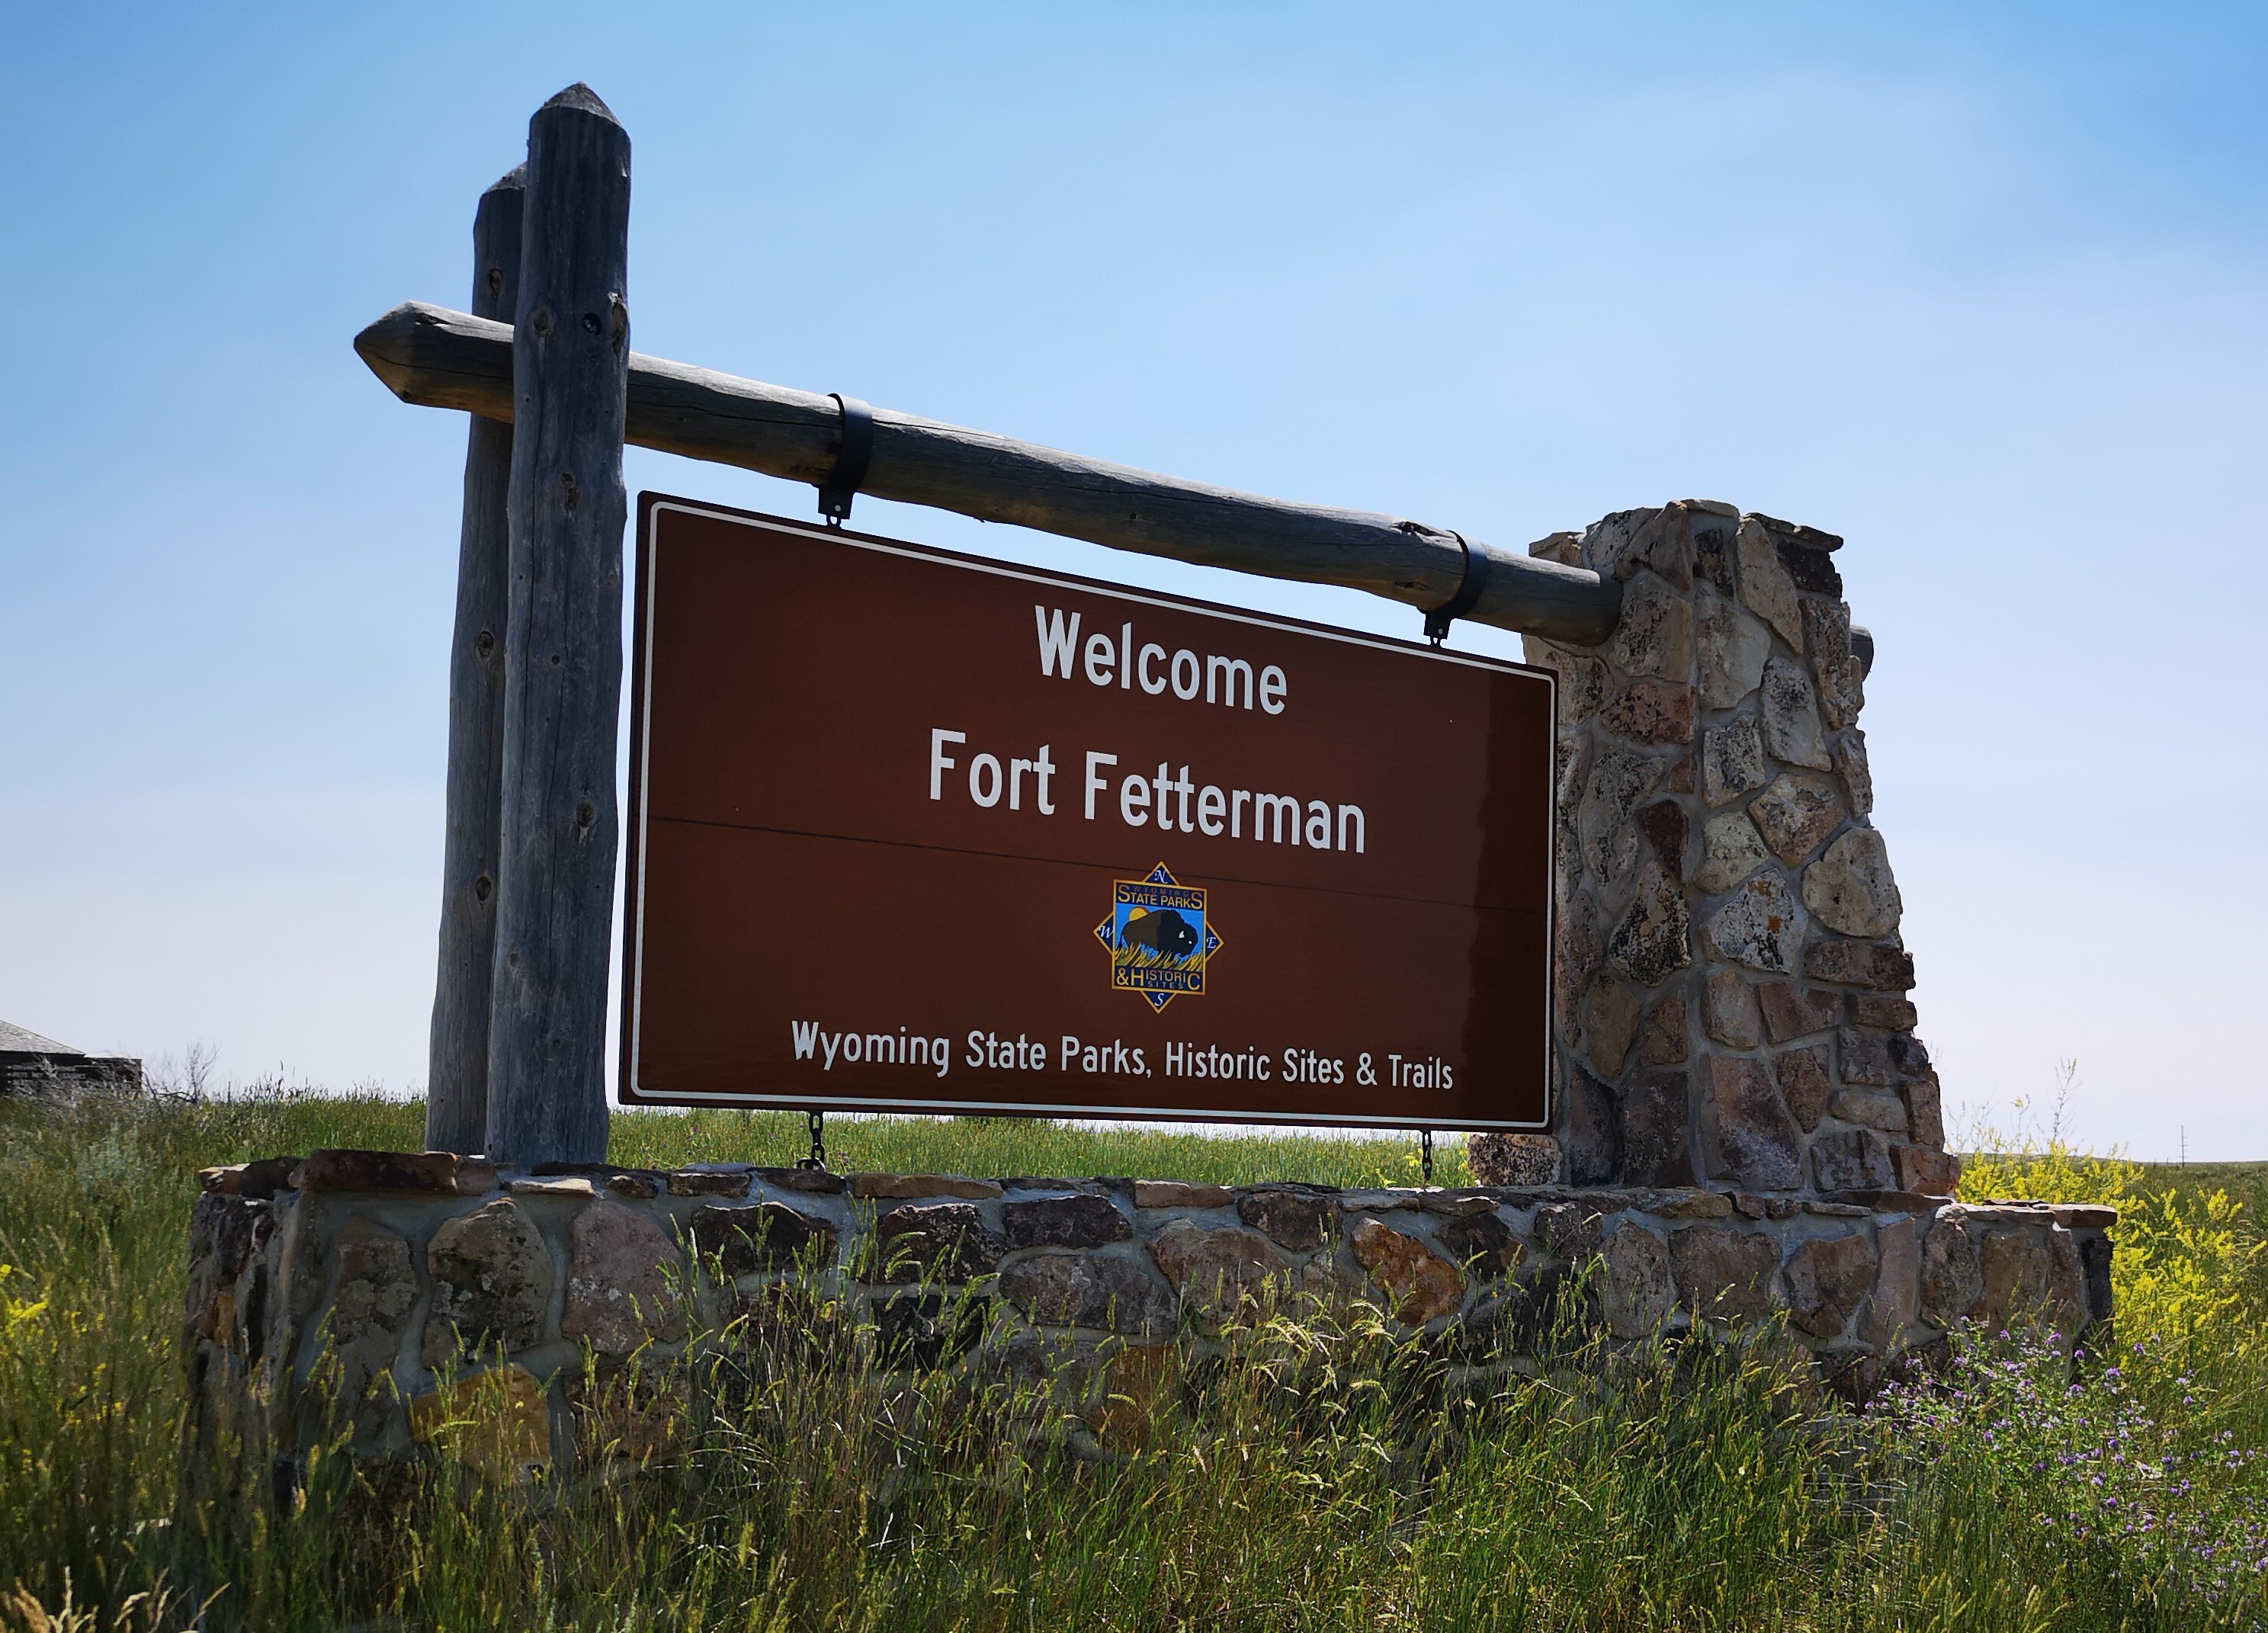 Fort Fetterman